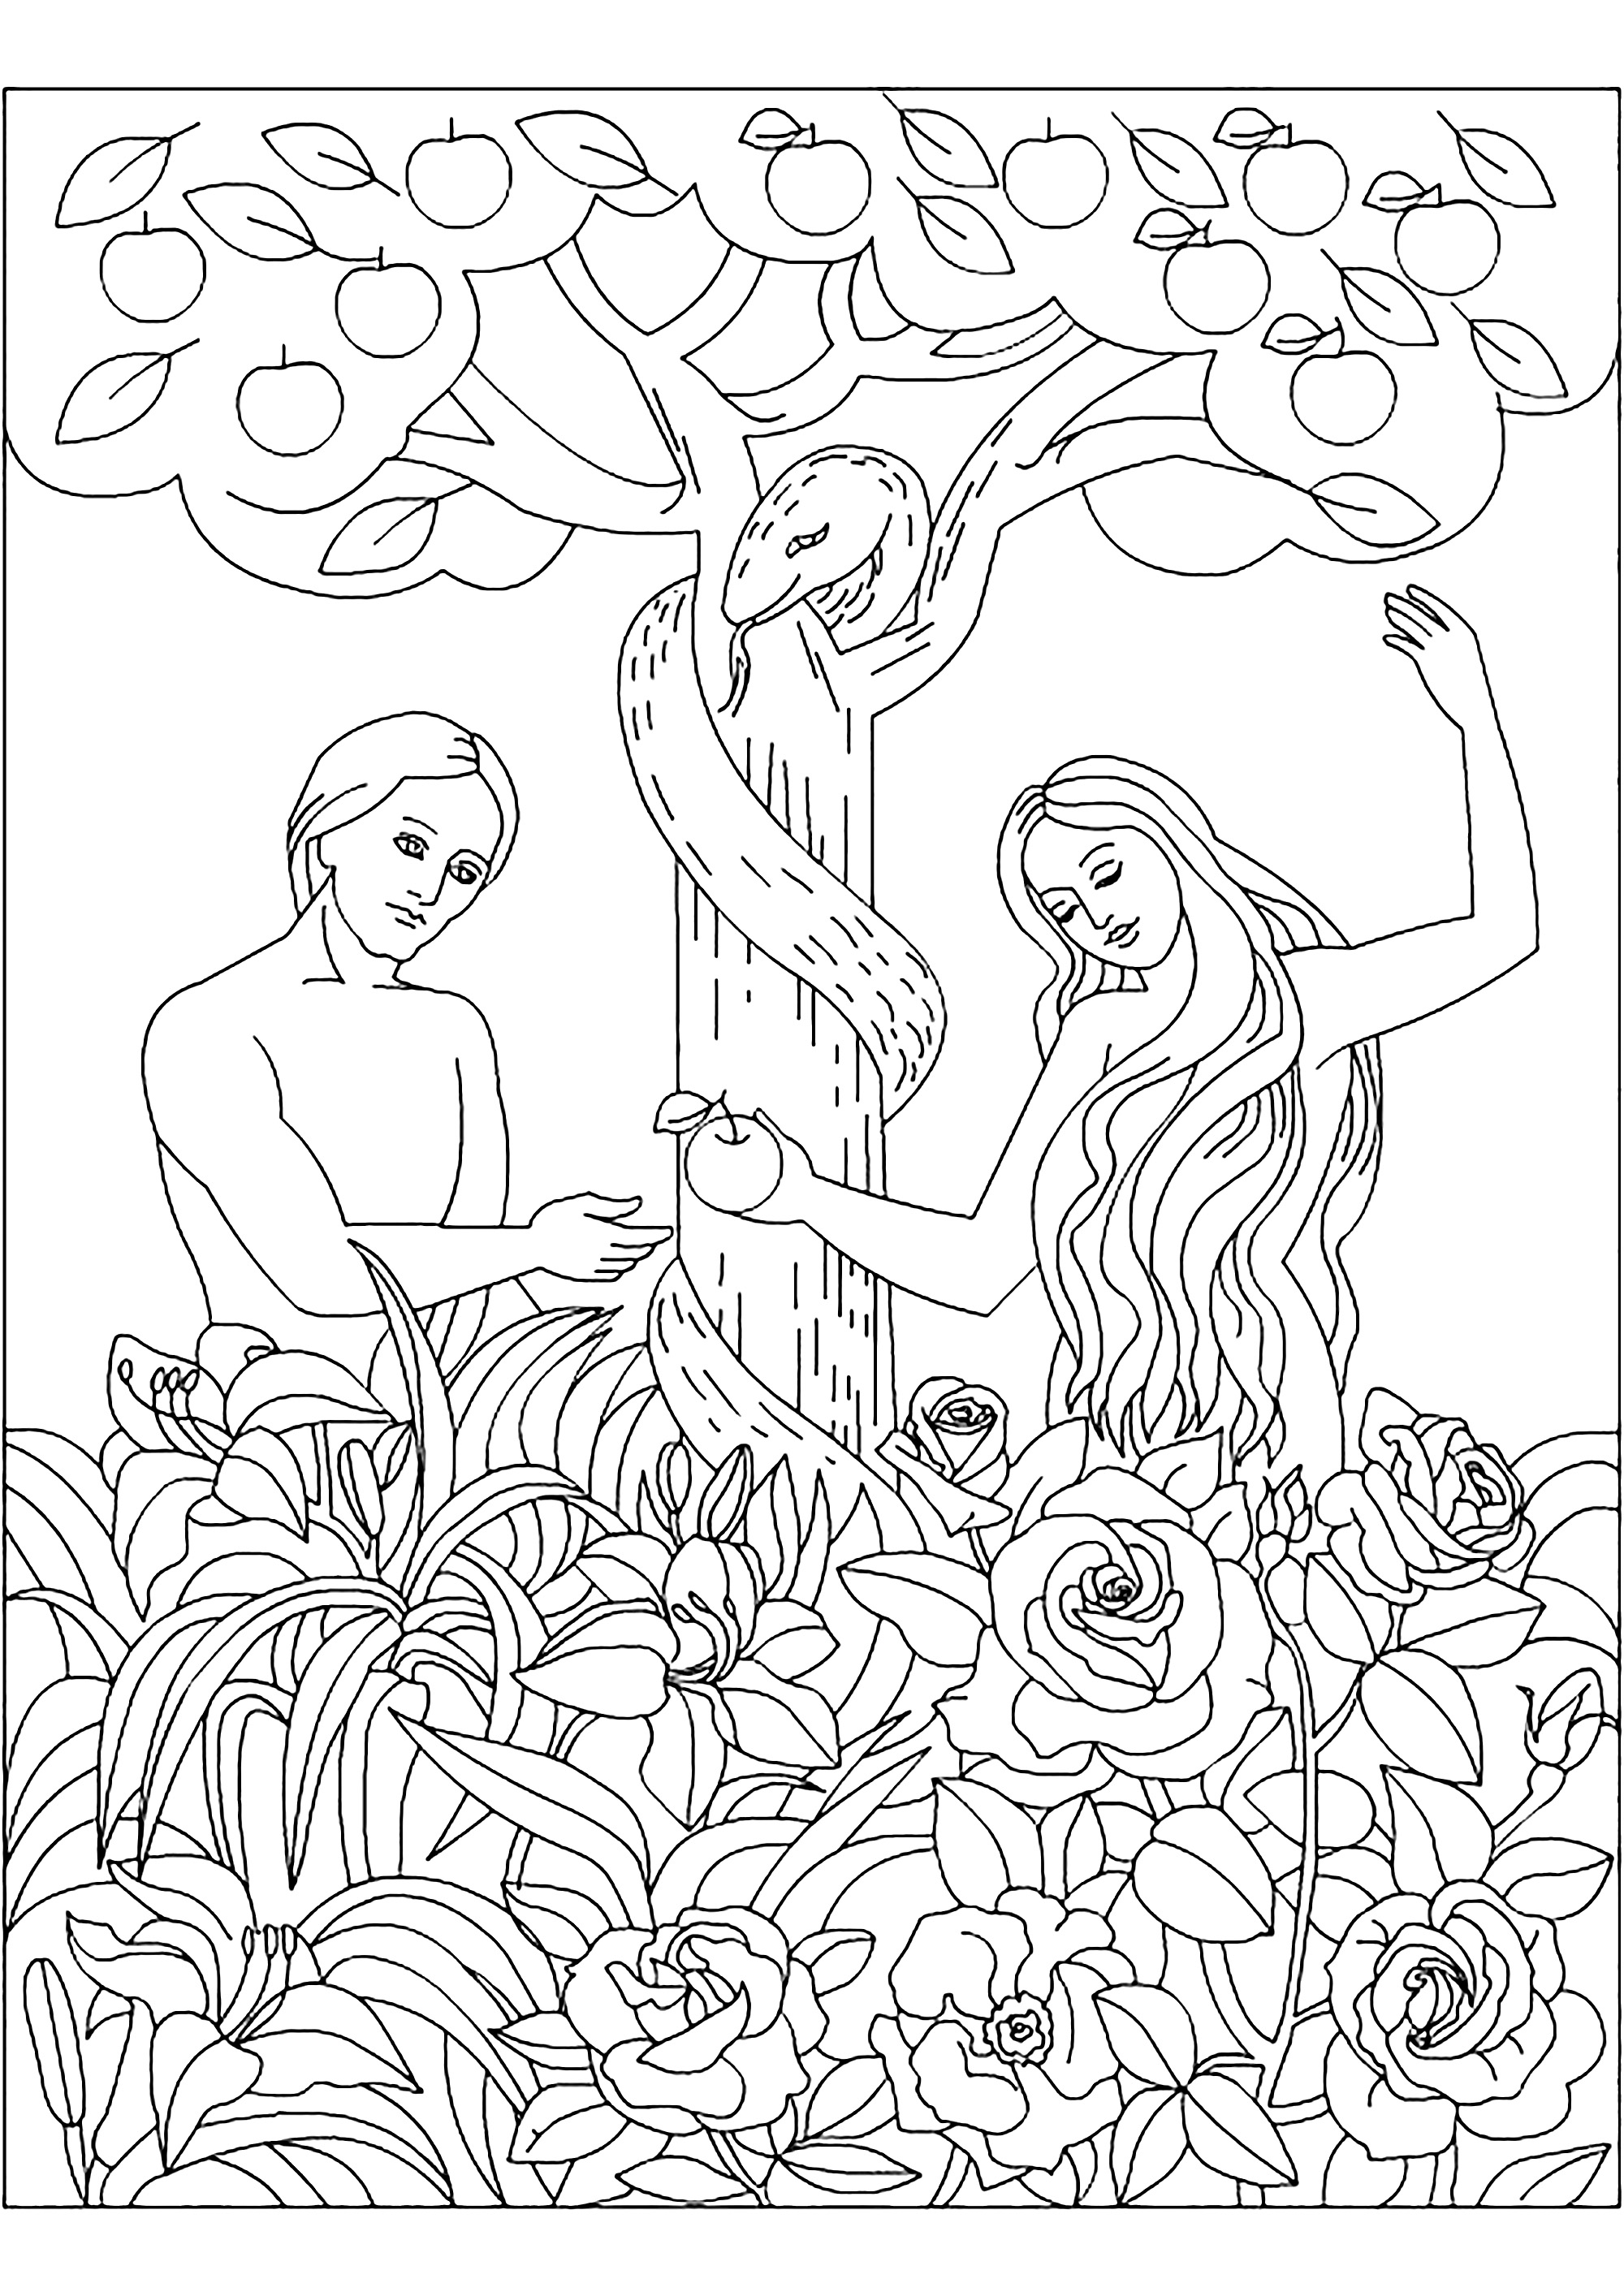 Página para colorear de Adán y Eva. Colorea a Adán, Eva, la serpiente y la famosa manzana